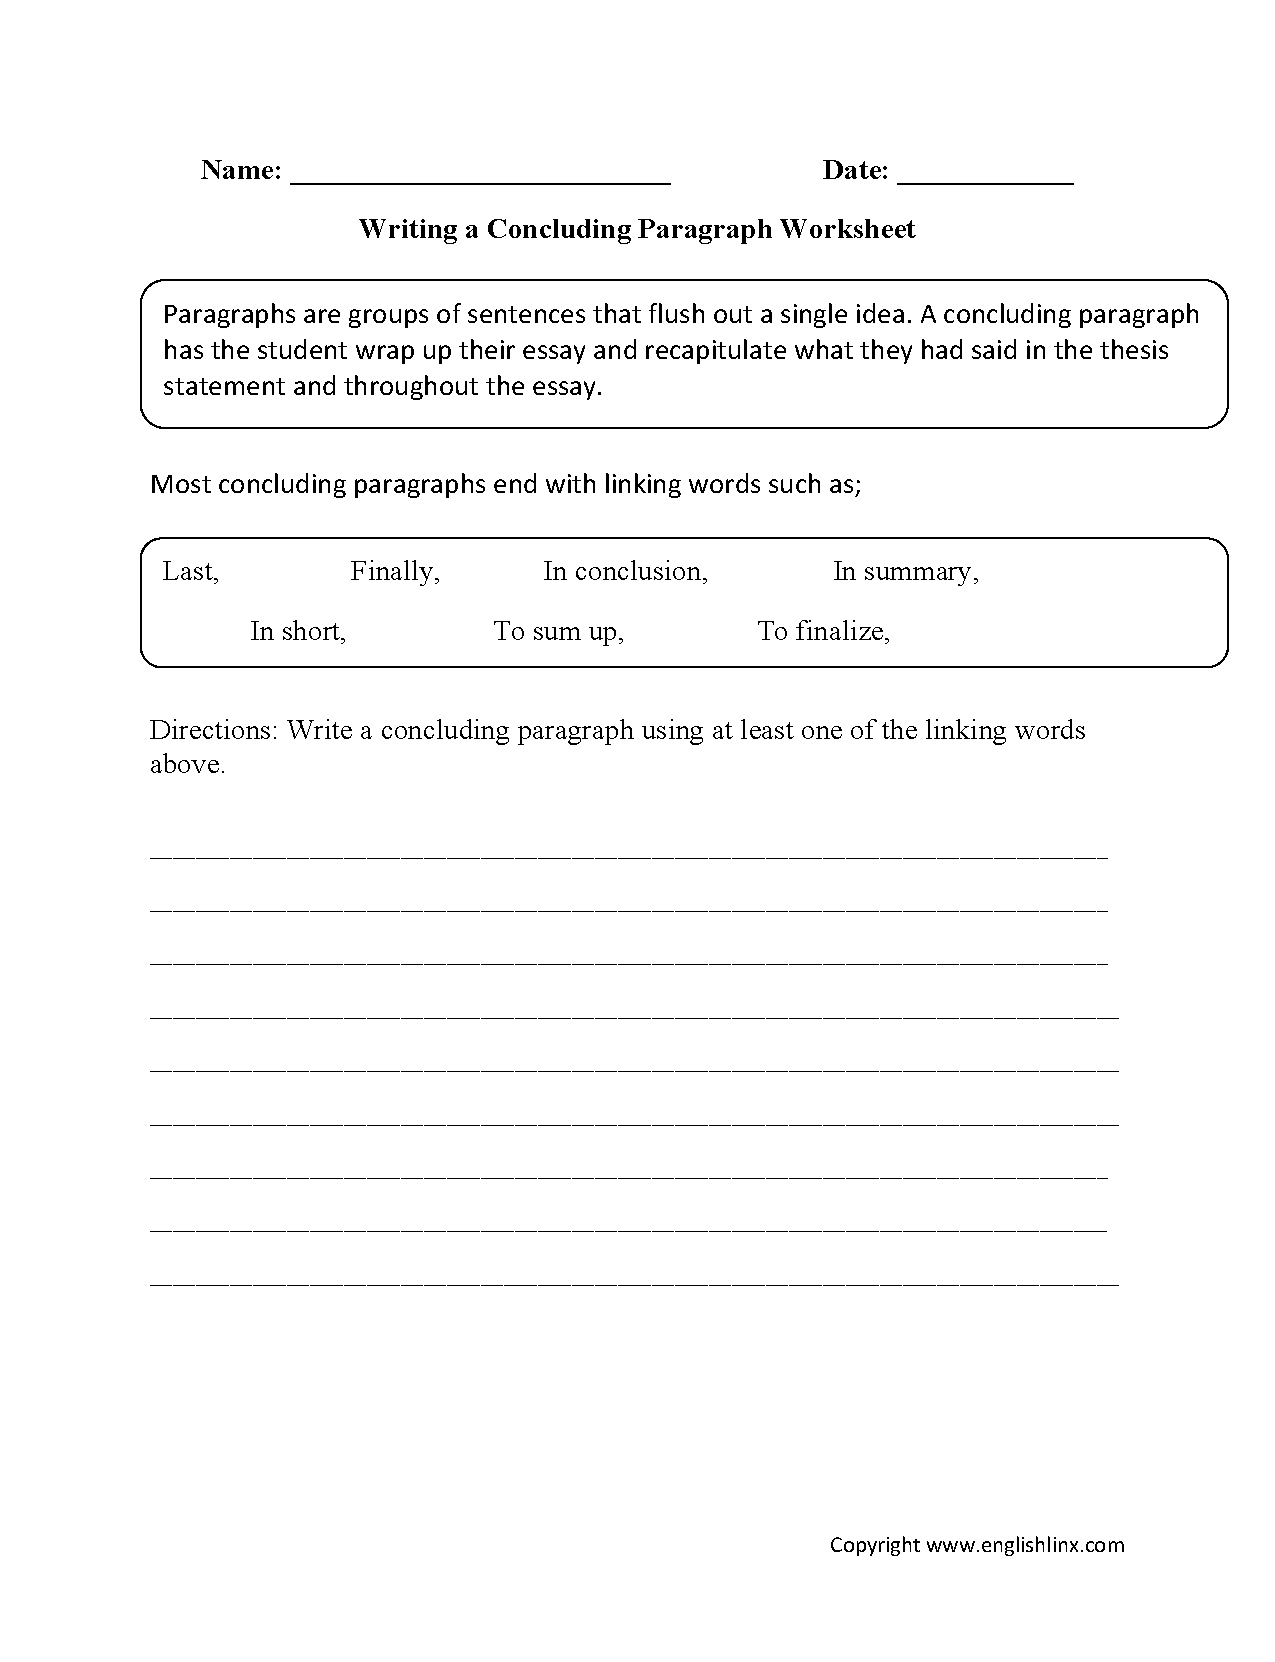 paragraph-tracing-worksheets-alphabetworksheetsfree